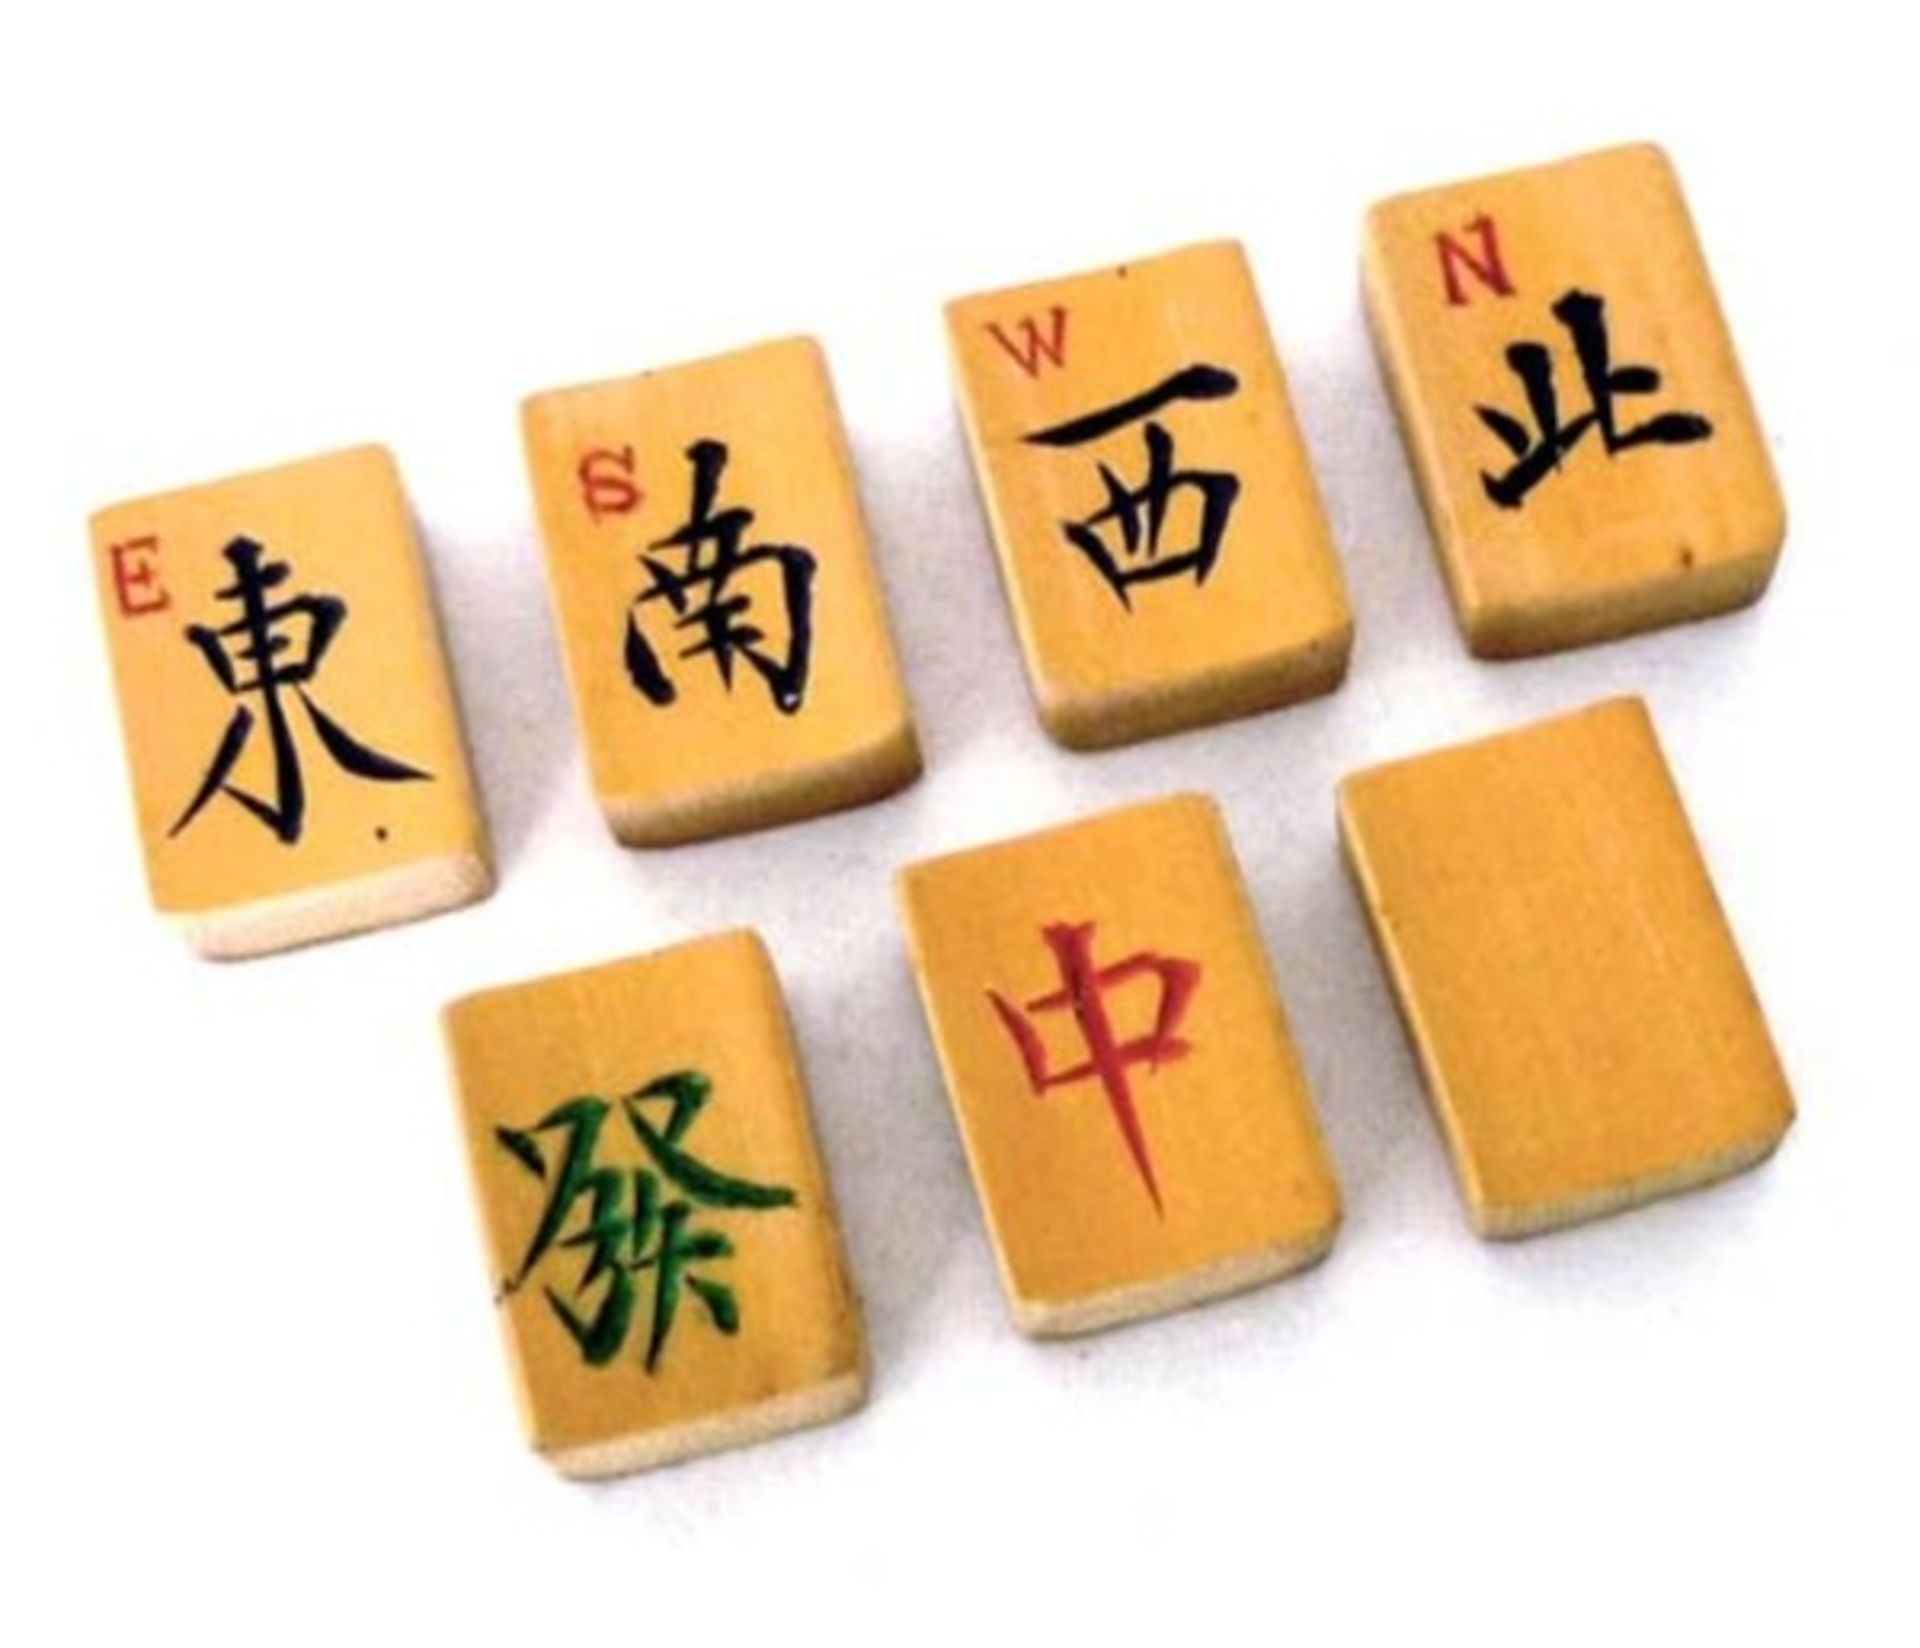 (Mahjong) Mahjong bamboe, langwerpig veelkleurige doos, ca. 1924 - Bild 5 aus 9